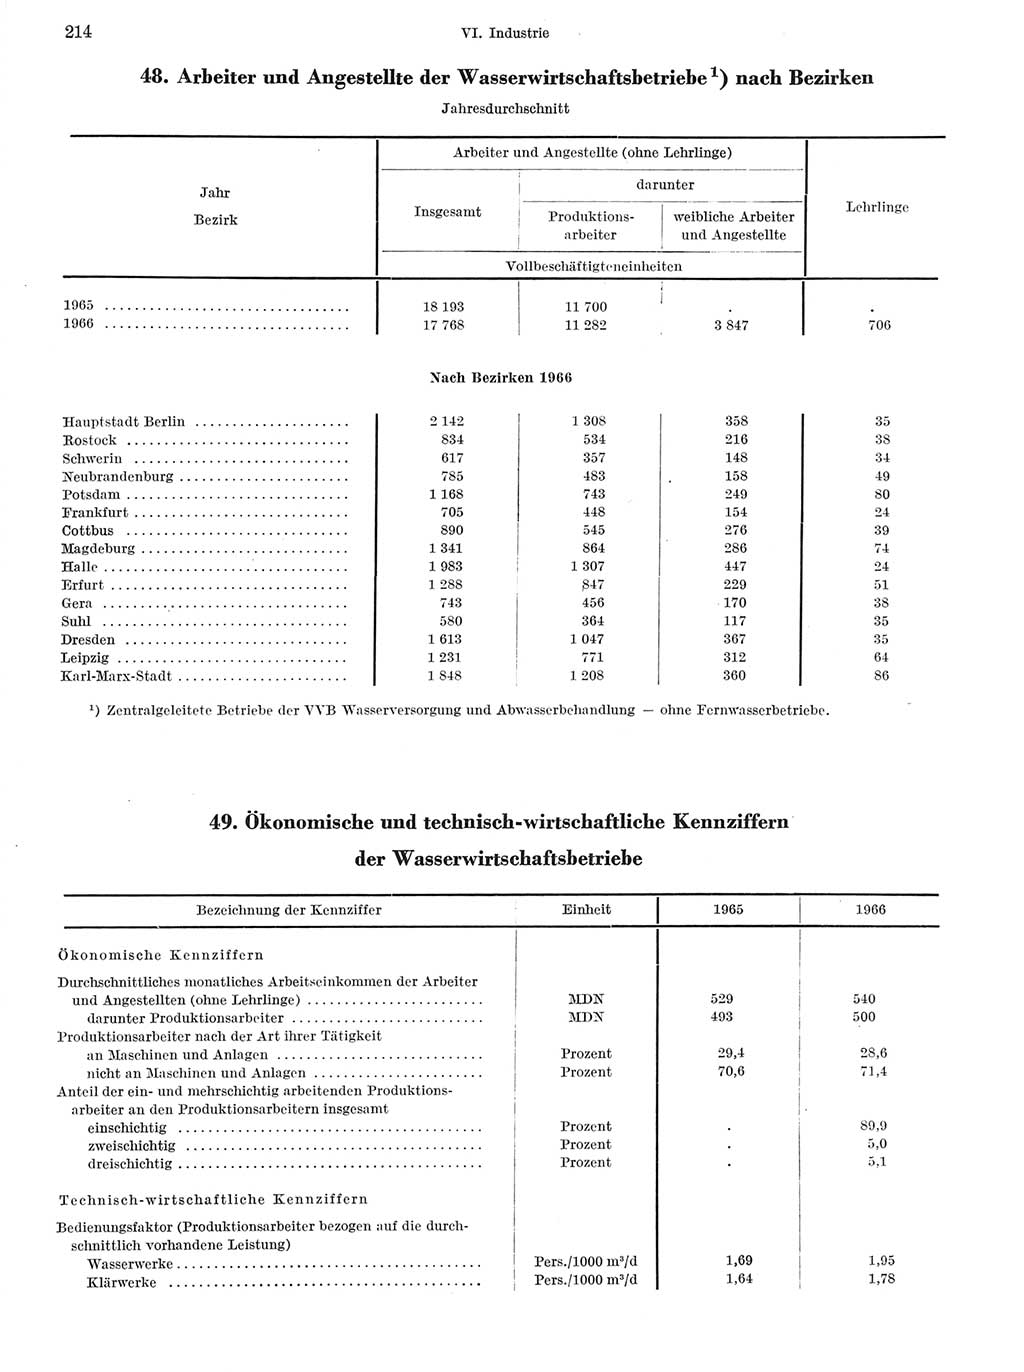 Statistisches Jahrbuch der Deutschen Demokratischen Republik (DDR) 1967, Seite 214 (Stat. Jb. DDR 1967, S. 214)